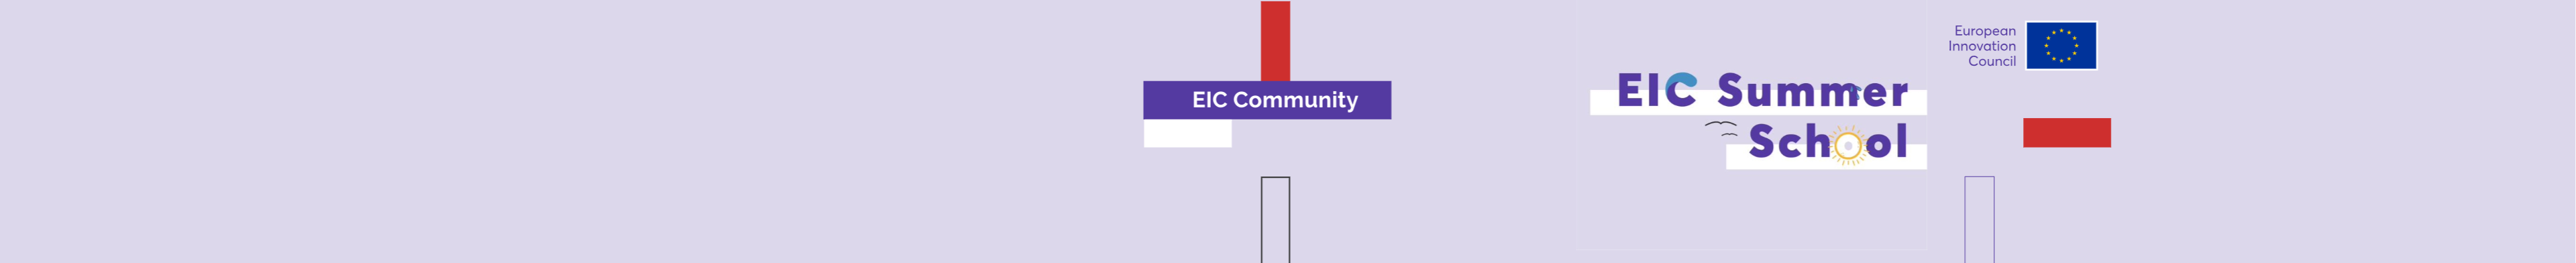 EICSummerSchool_Banner